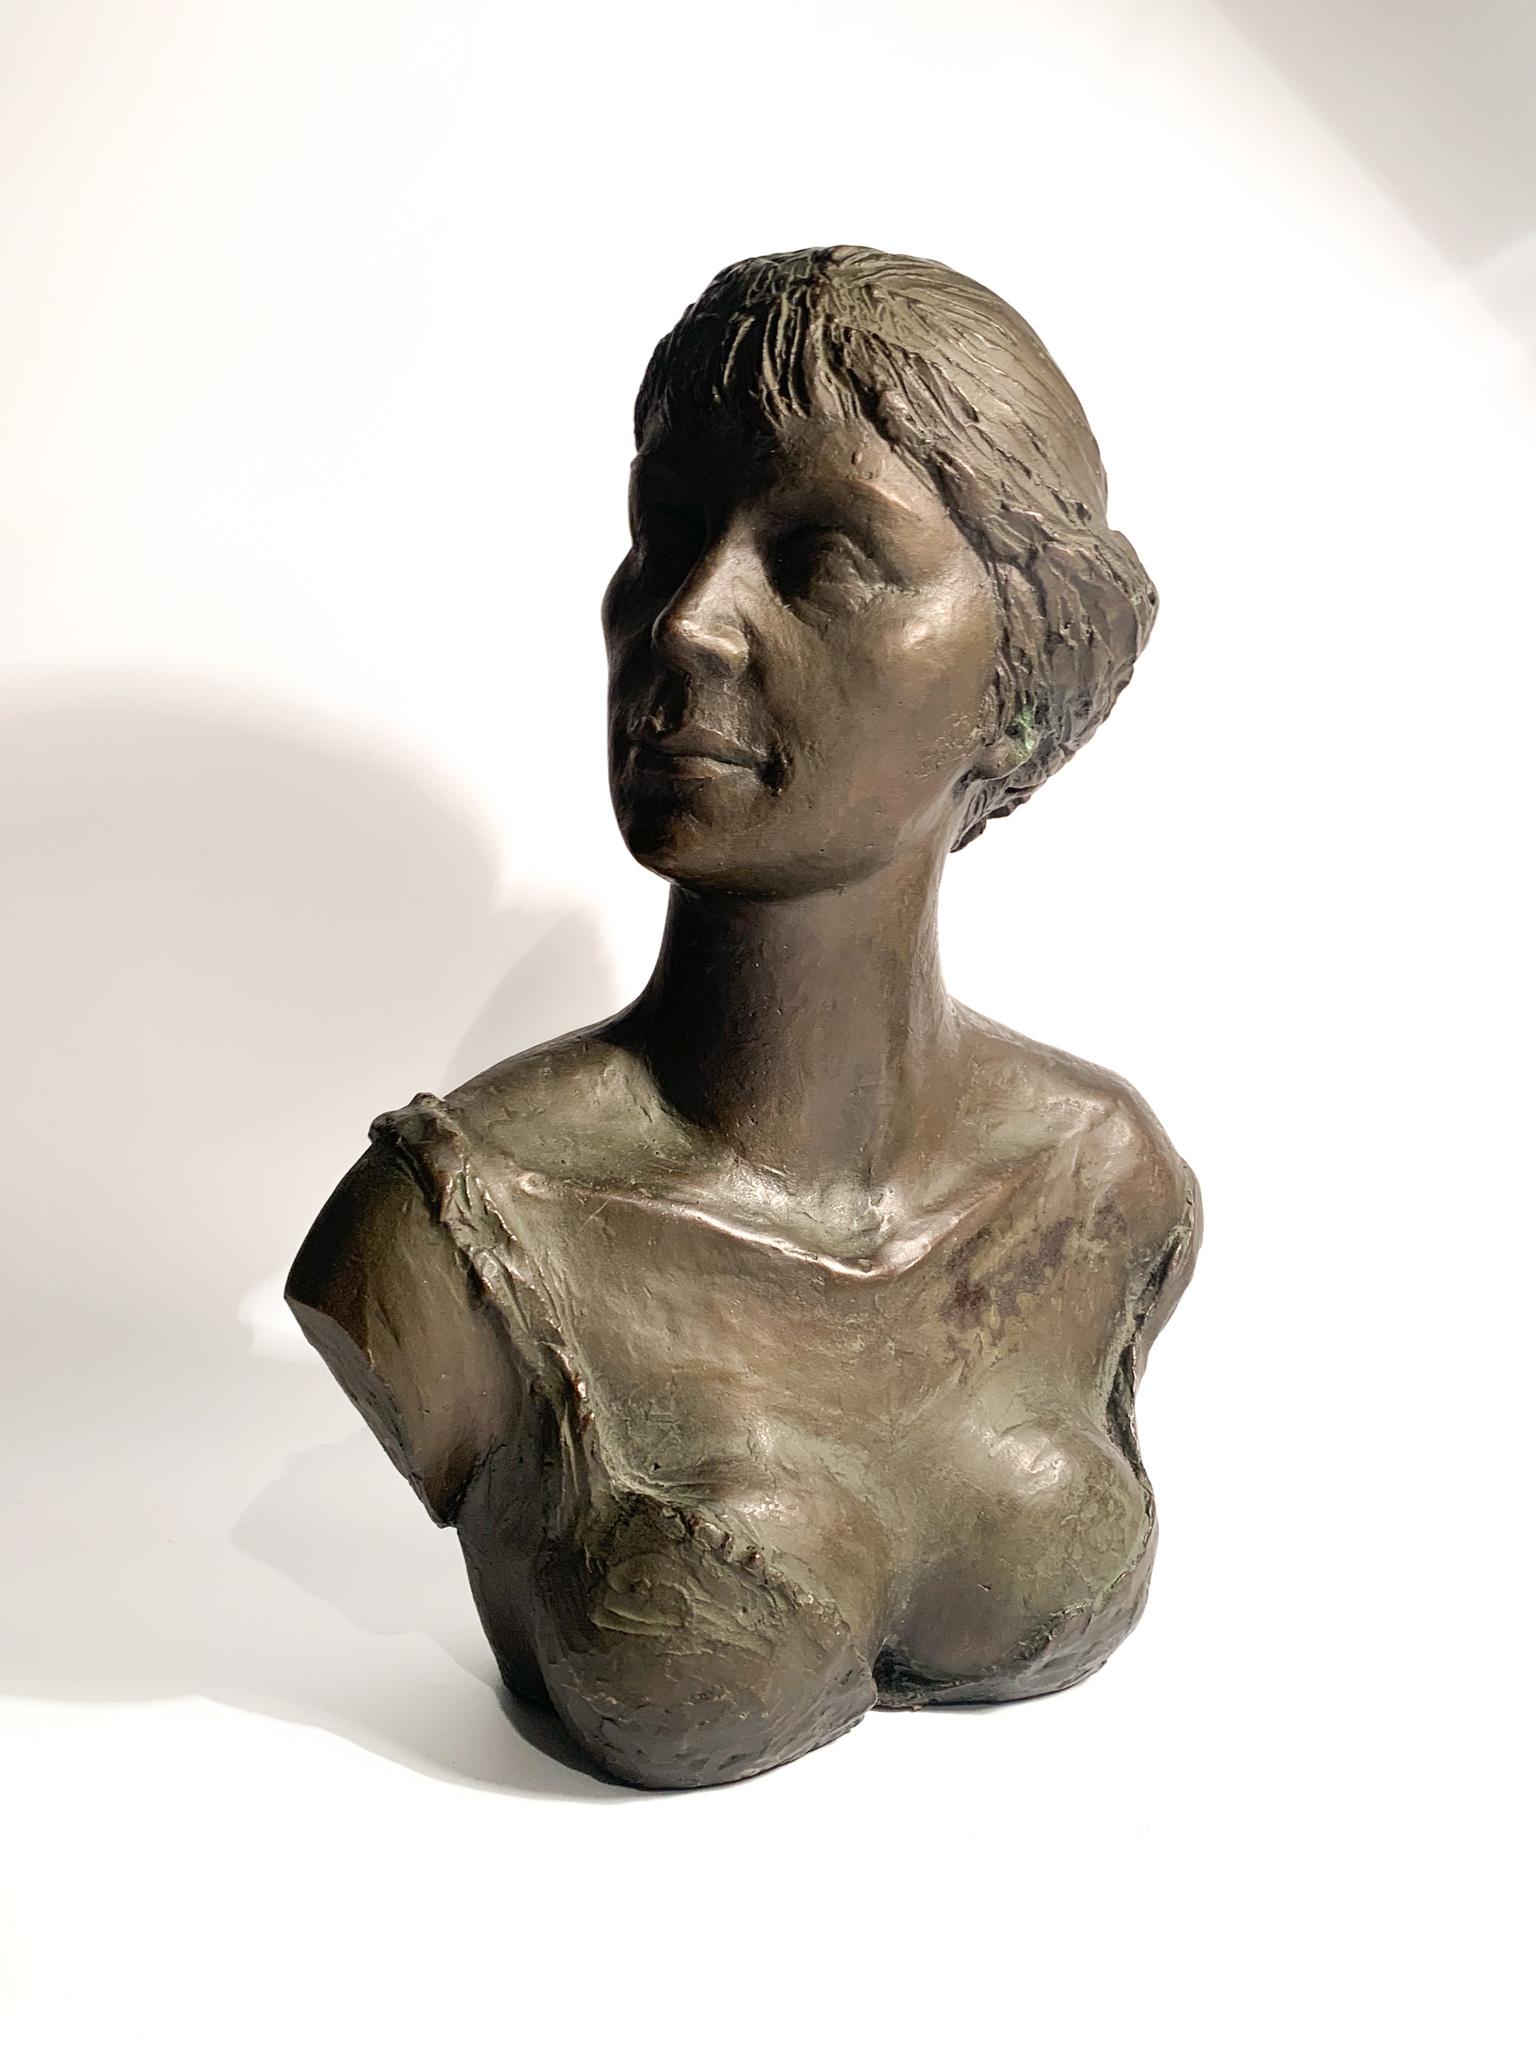 Weibliche Bronzebüste im Wachsausschmelzverfahren, geschaffen von Giuseppe Motti (1908 - 1988) in den 1950er Jahren

Ø 24 cmØ 12 cm h 31 cm